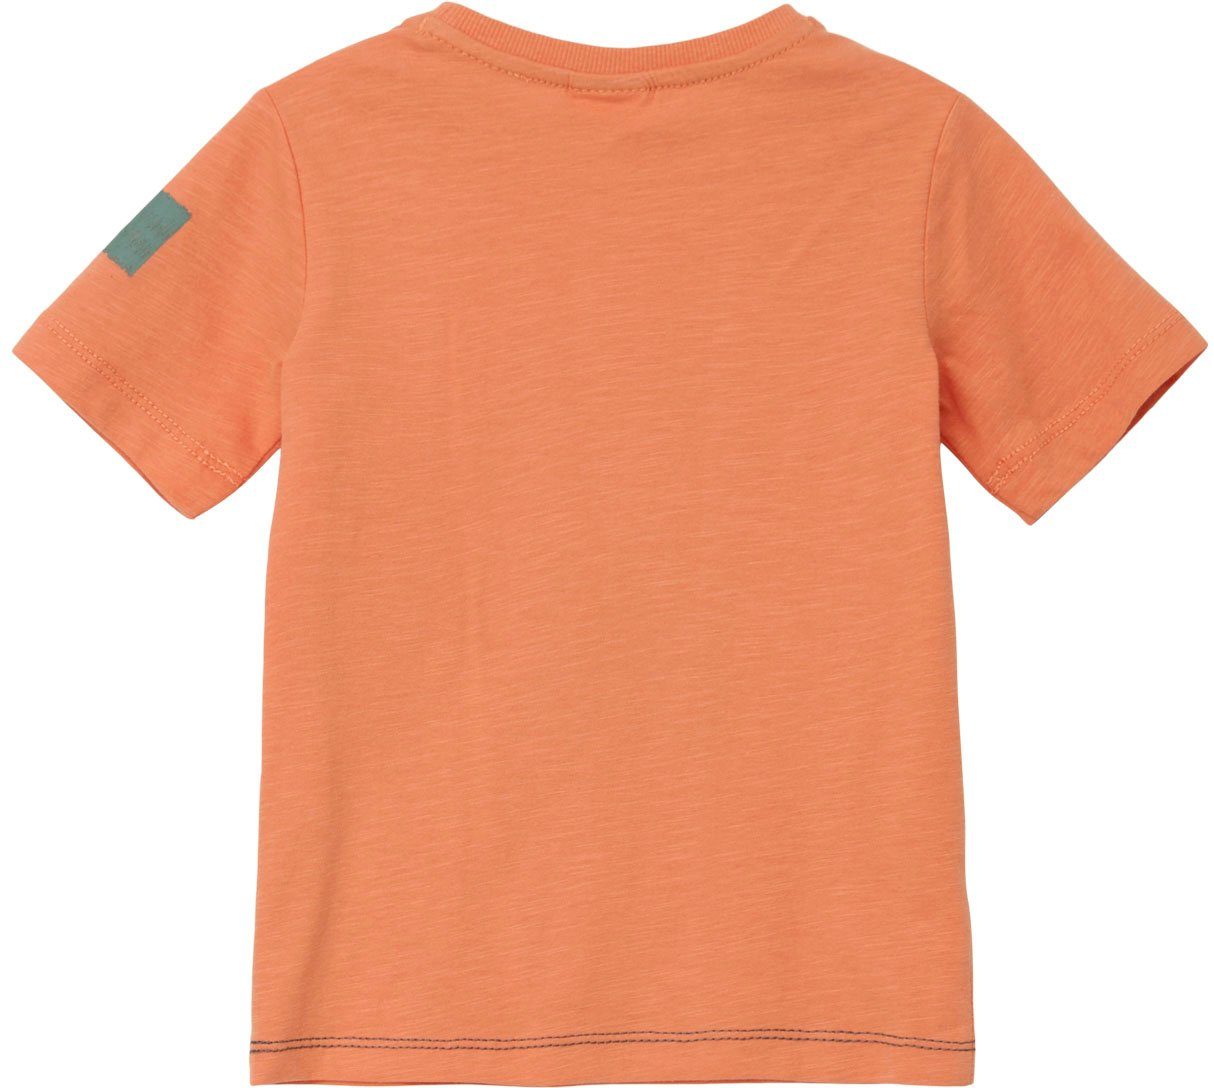 s.Oliver Stickereien Junior T-Shirt am orange Arm